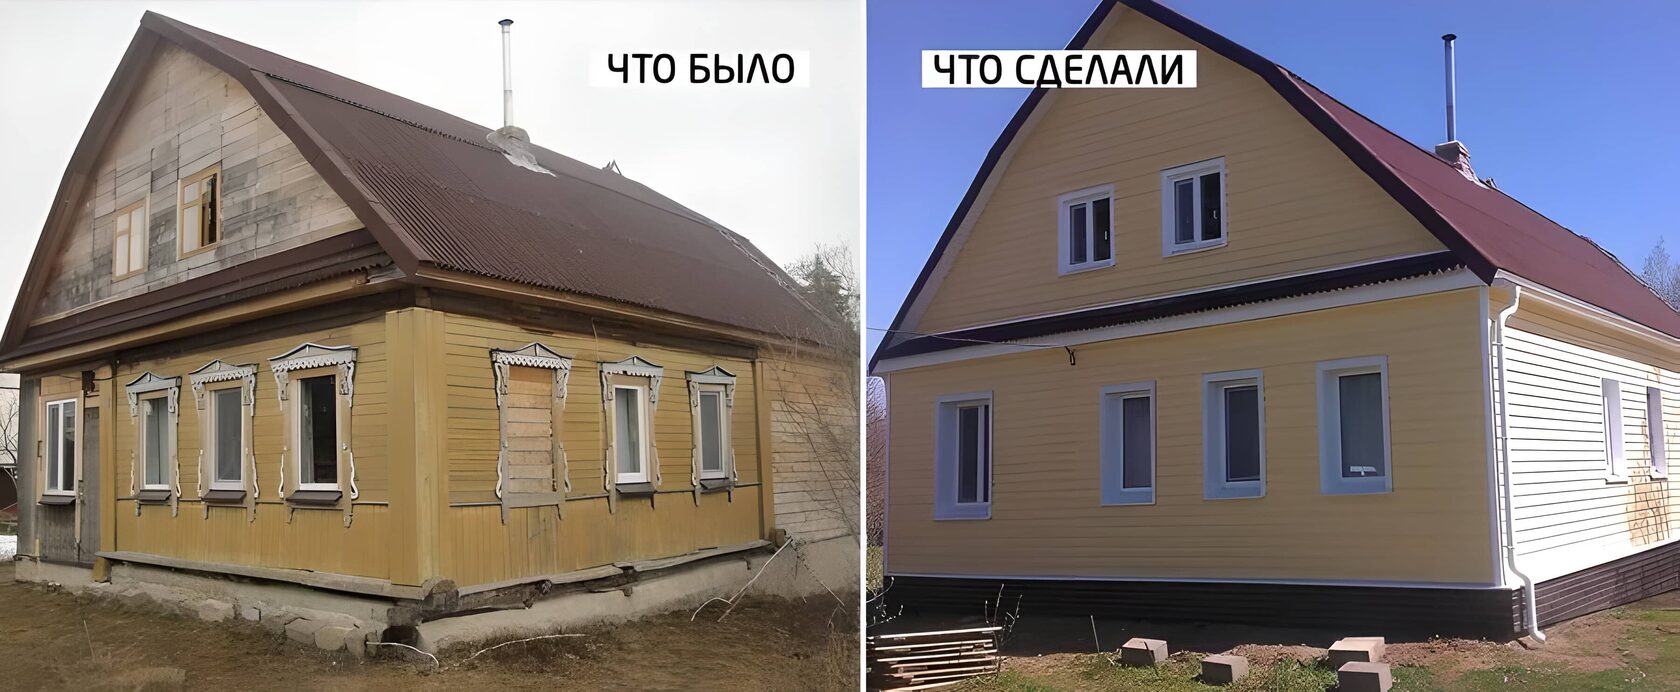 Реконструкция старых домов до и после